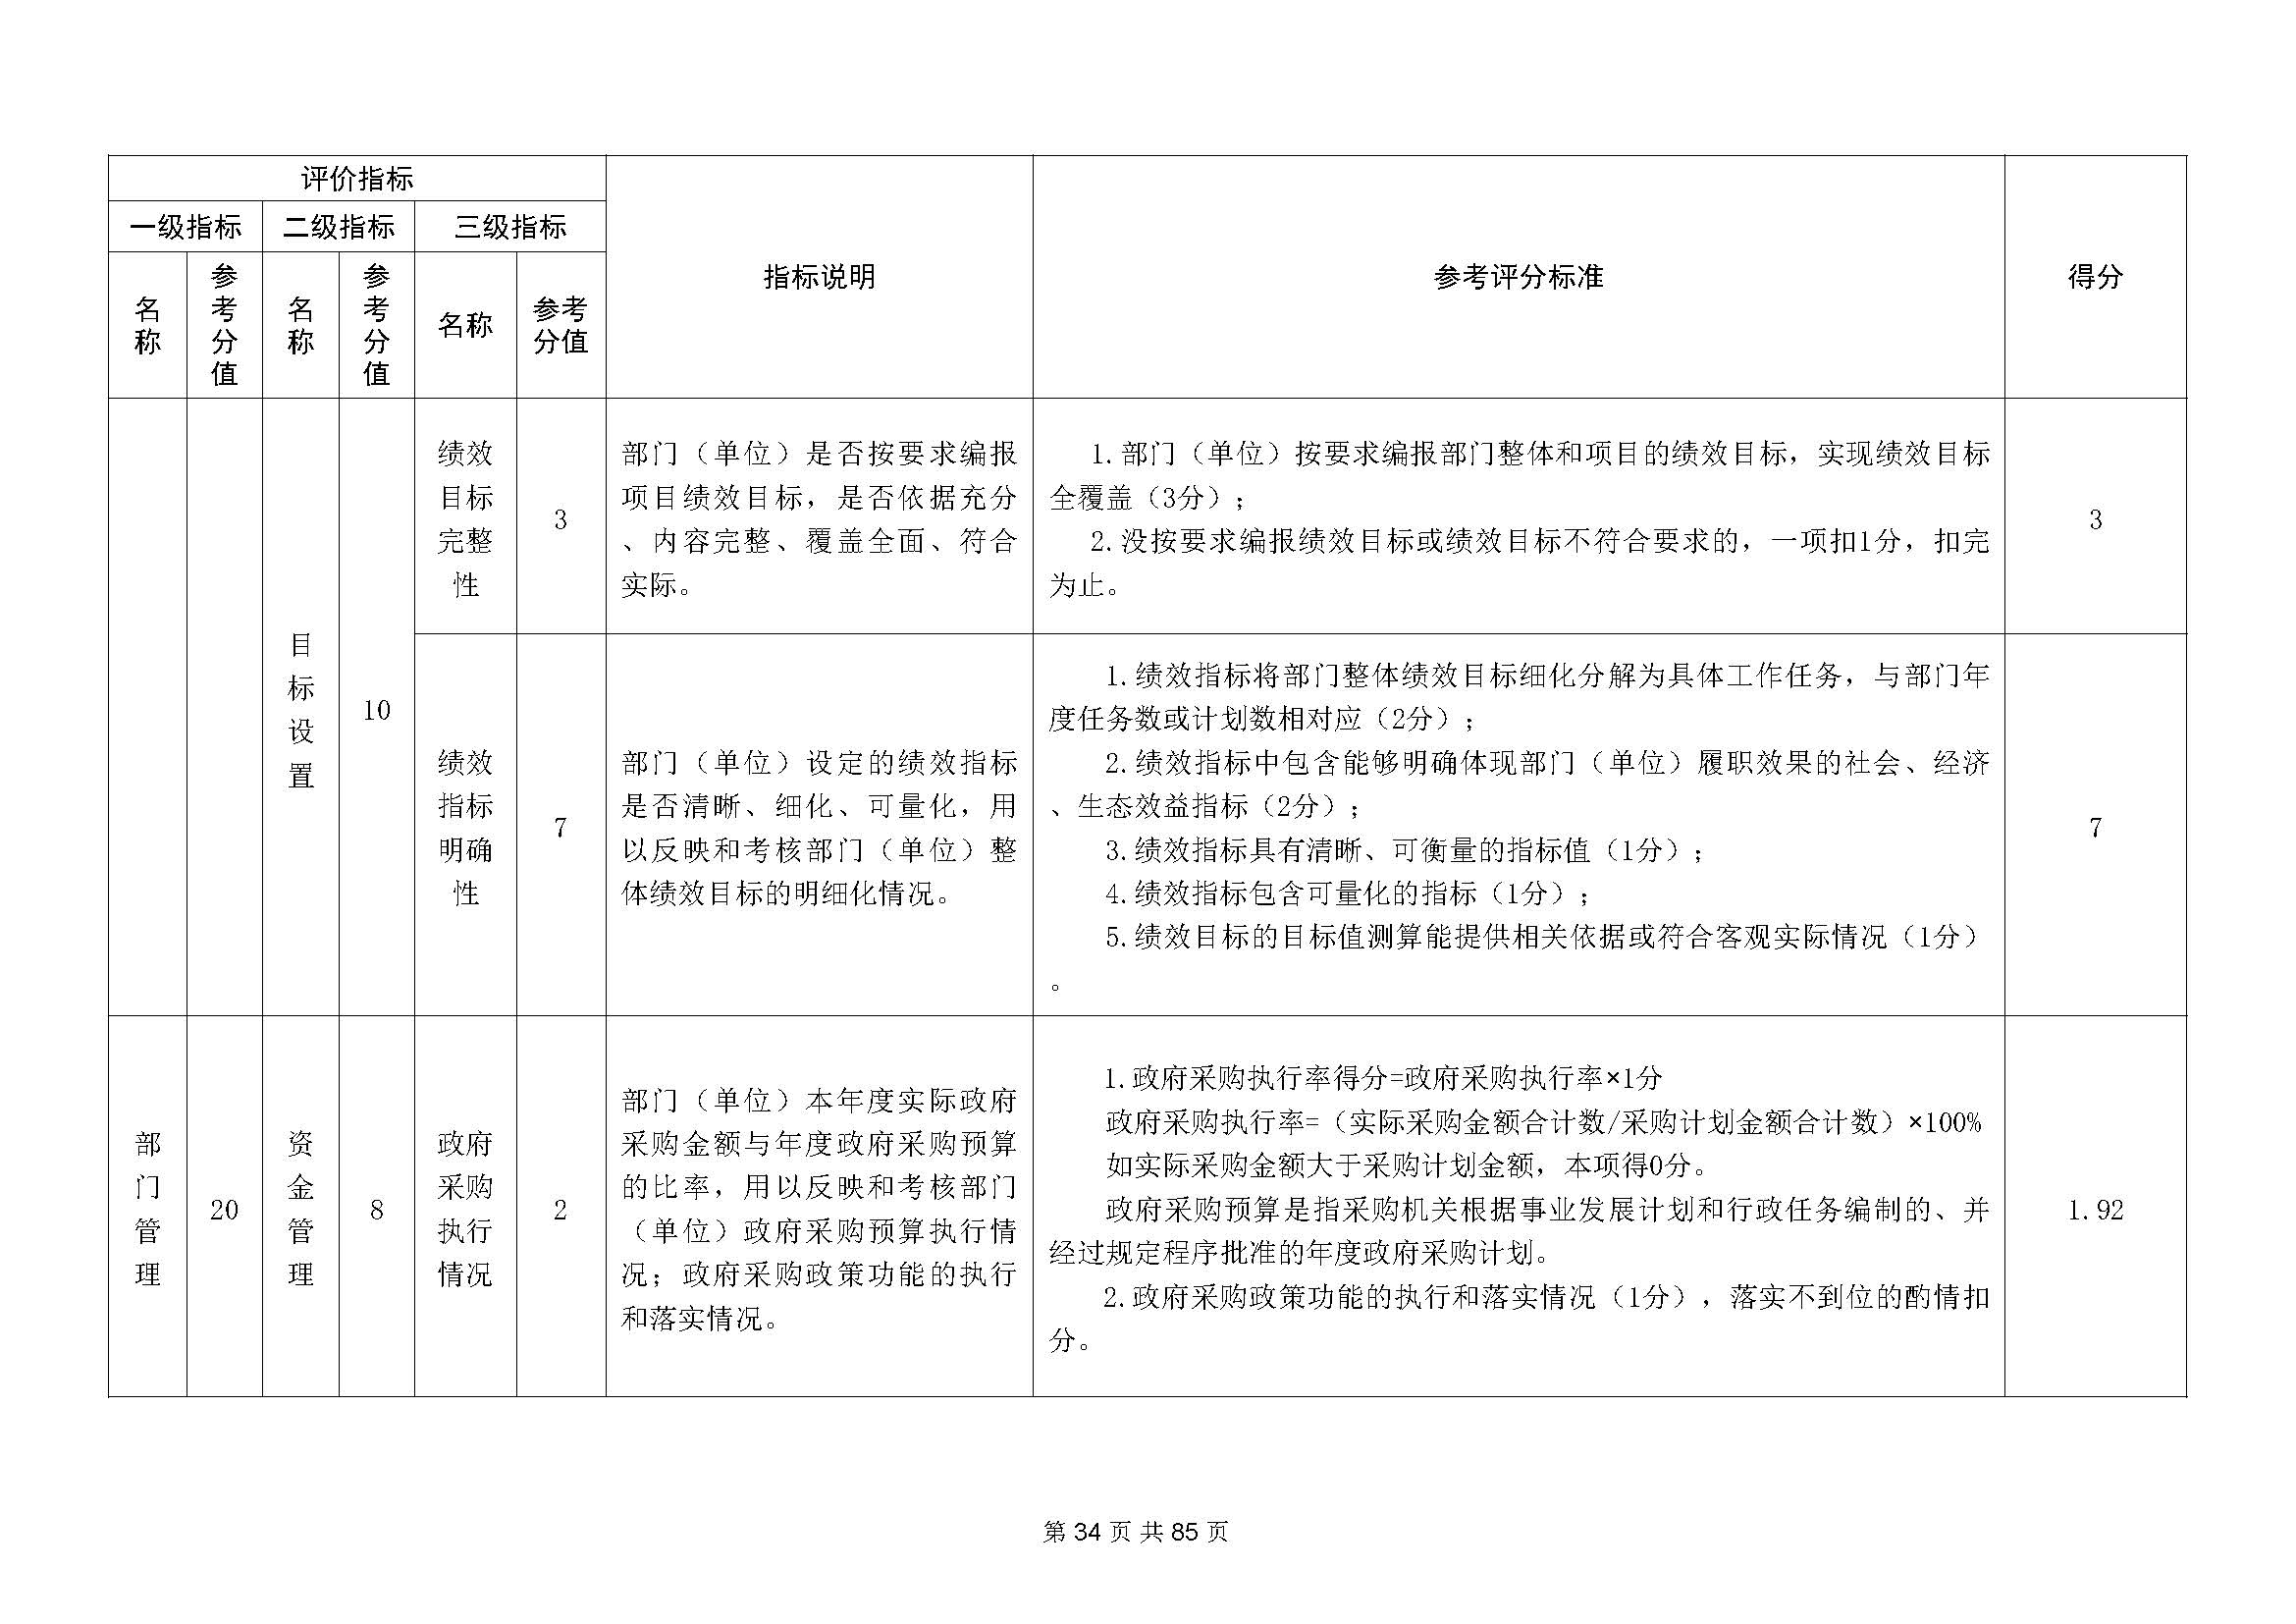 深圳市招生考试办公室2020年度部门决算_页面_35.jpg